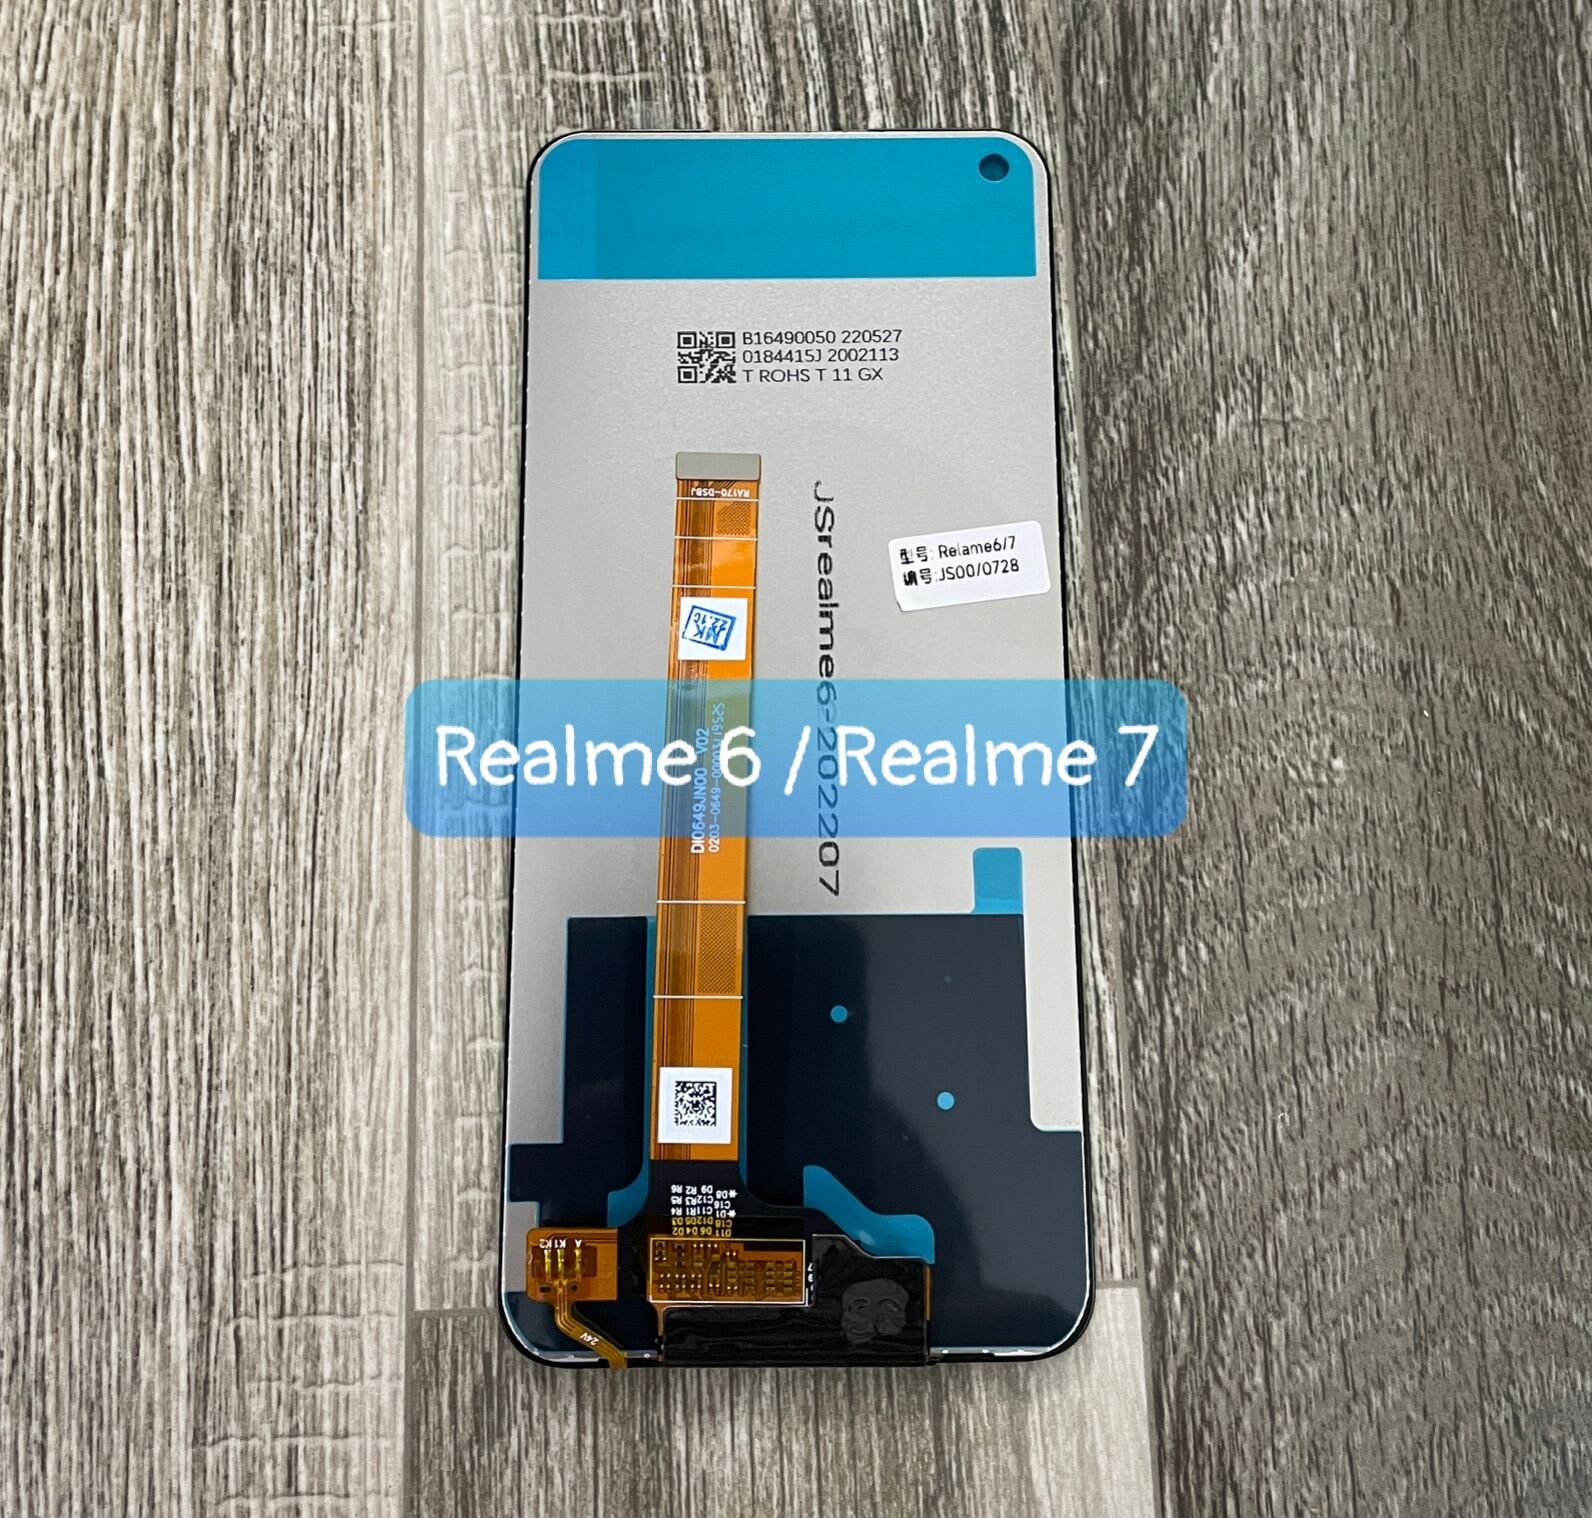 So sánh Realme 7 và Realme 7 Pro - Lựa chọn nào hoàn hảo cho bạn? -  Thegioididong.com